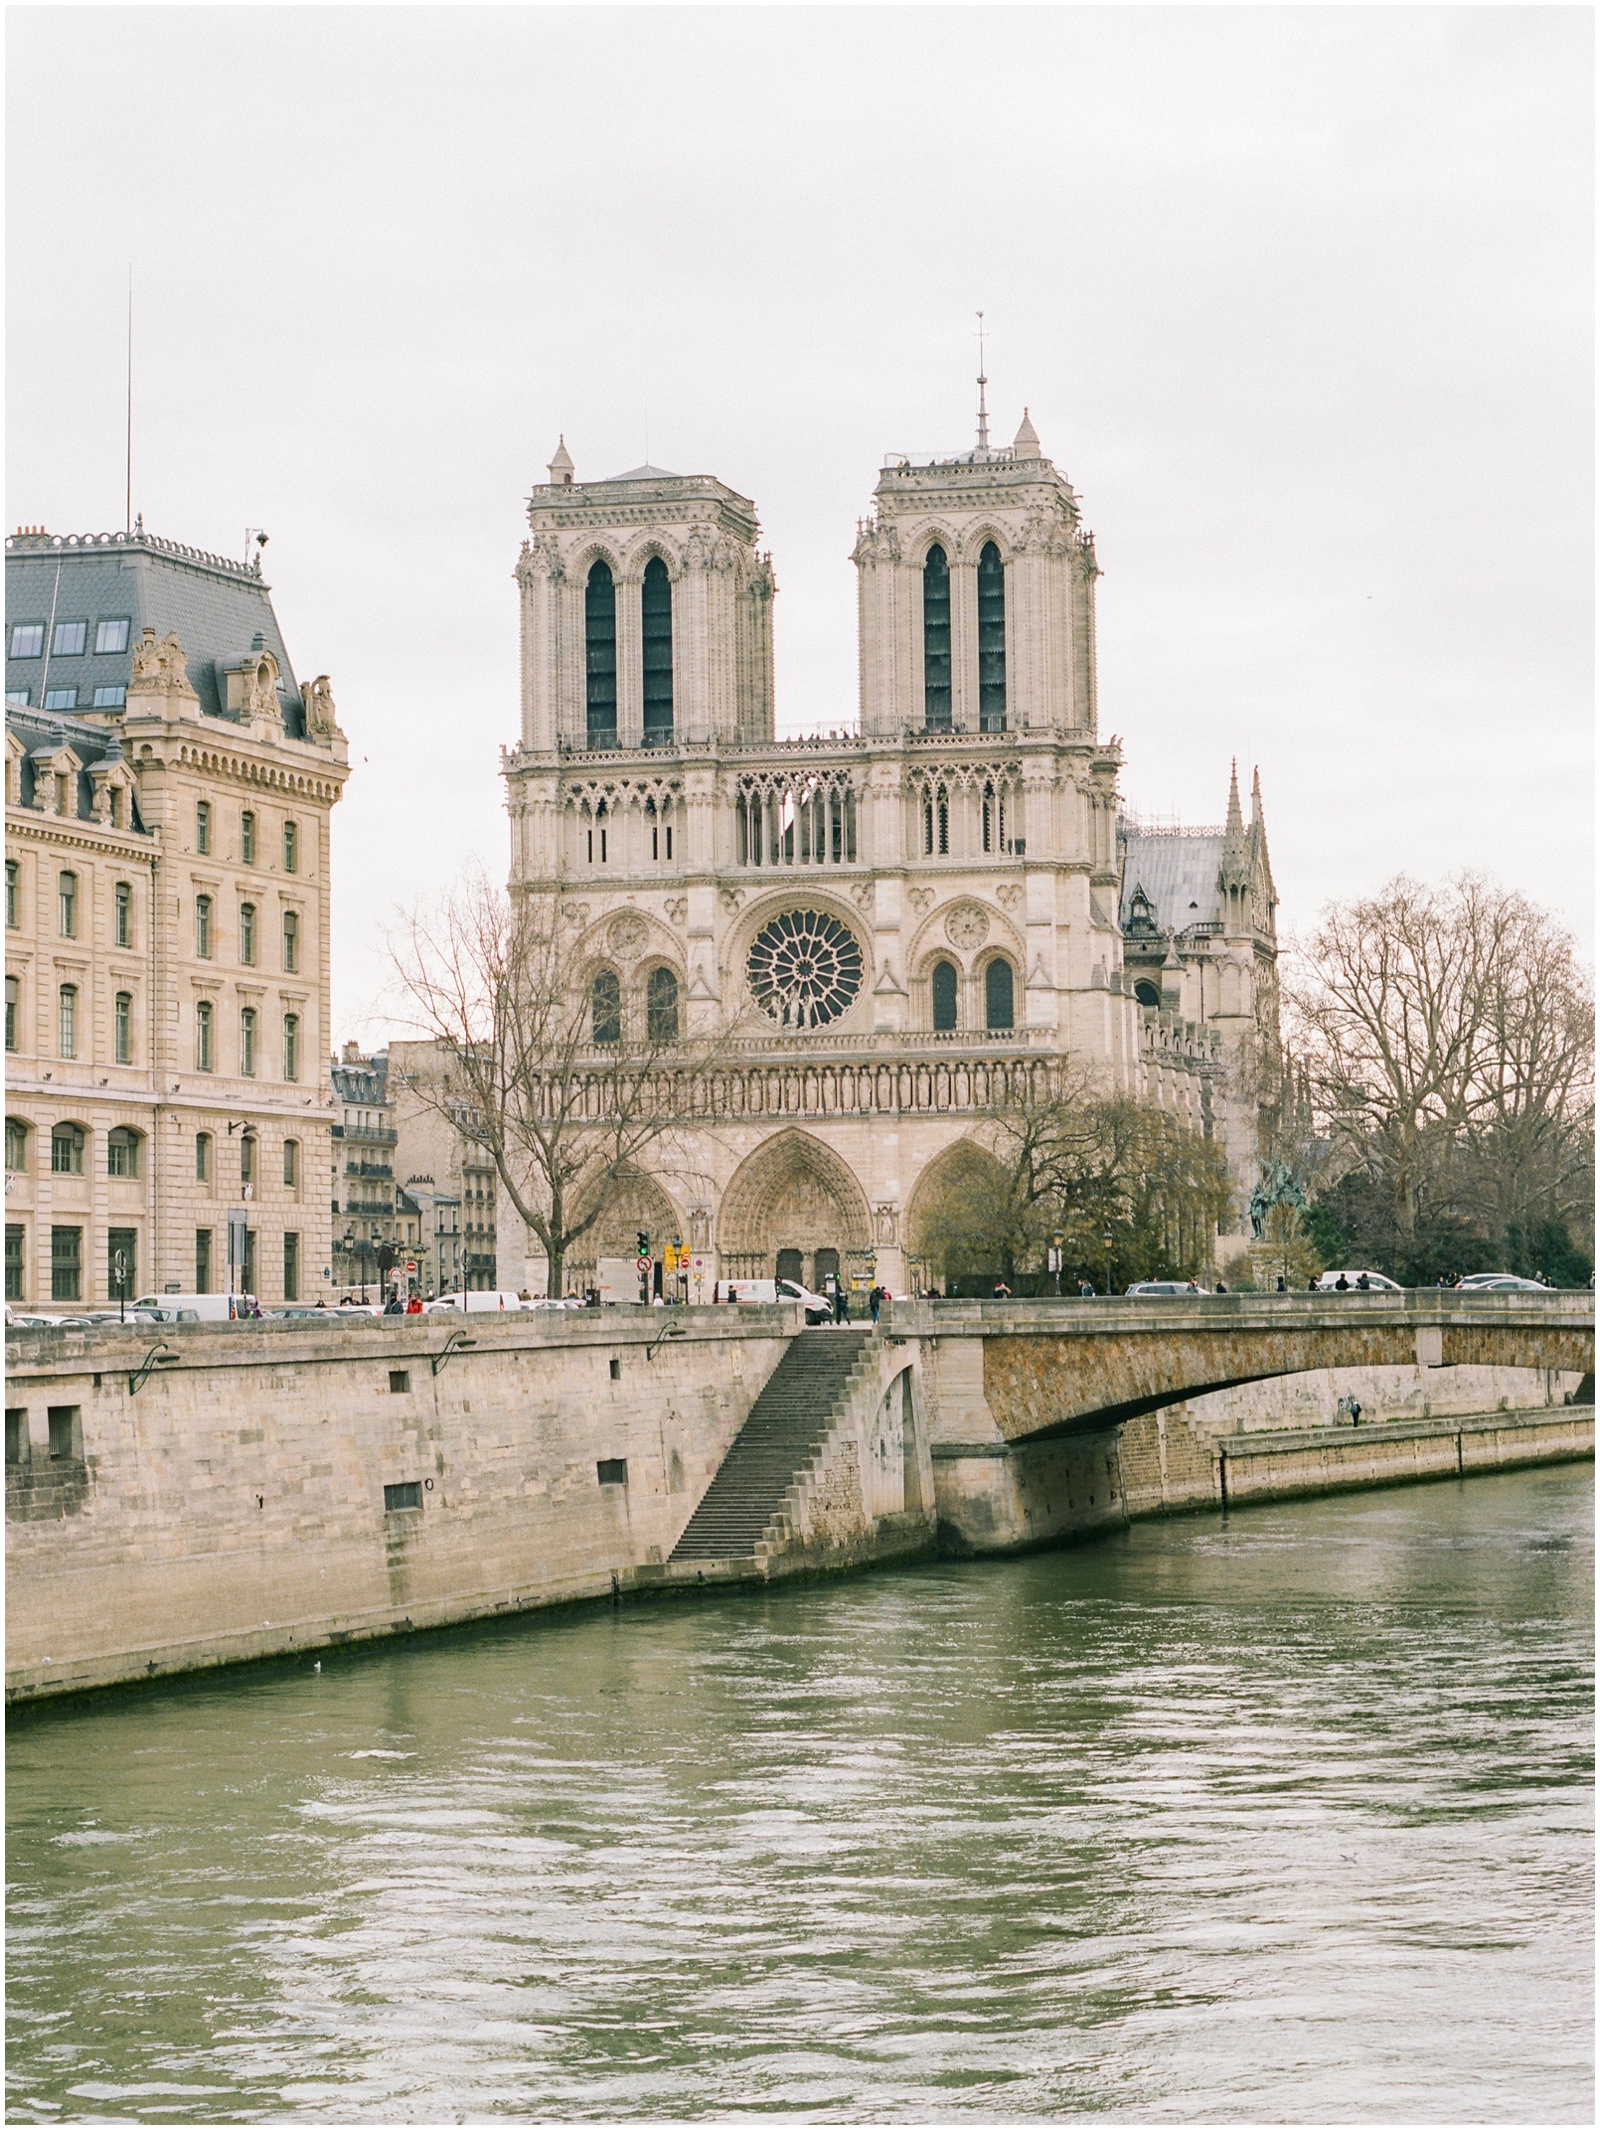 2019 Top Ten Paris travel photos: notre dame paris